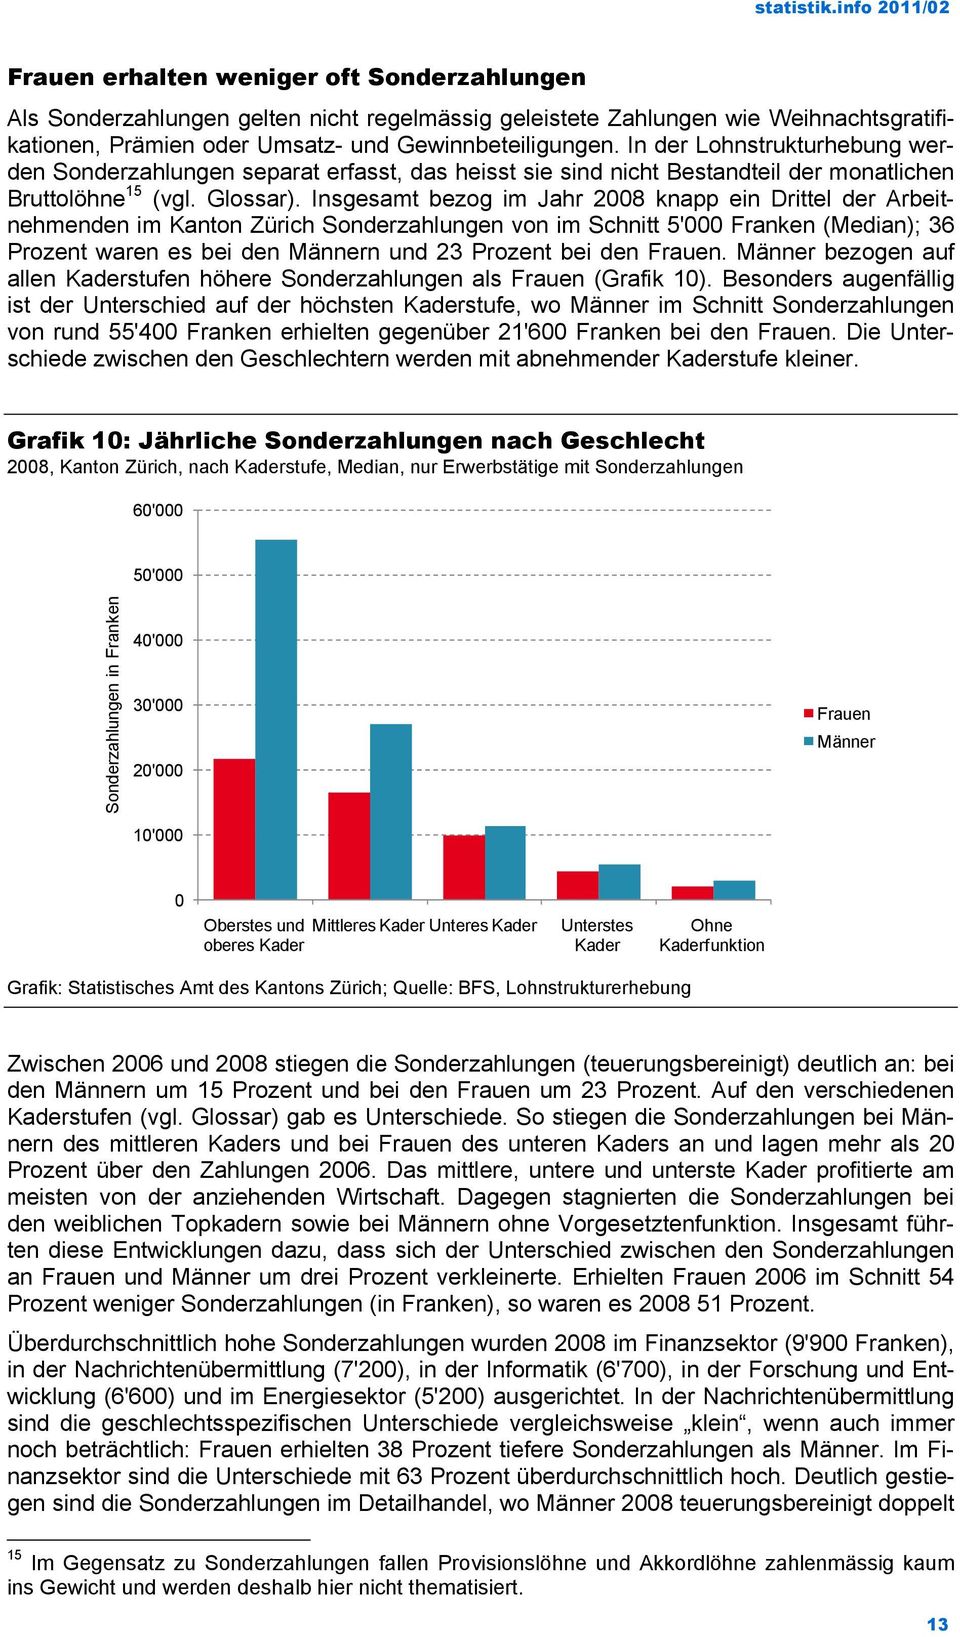 Insgesamt bezog im Jahr 2008 knapp ein Drittel der Arbeitnehmenden im Kanton Zürich Sonderzahlungen von im Schnitt 5'000 Franken (Median); 36 Prozent waren es bei den Männern und 23 Prozent bei den